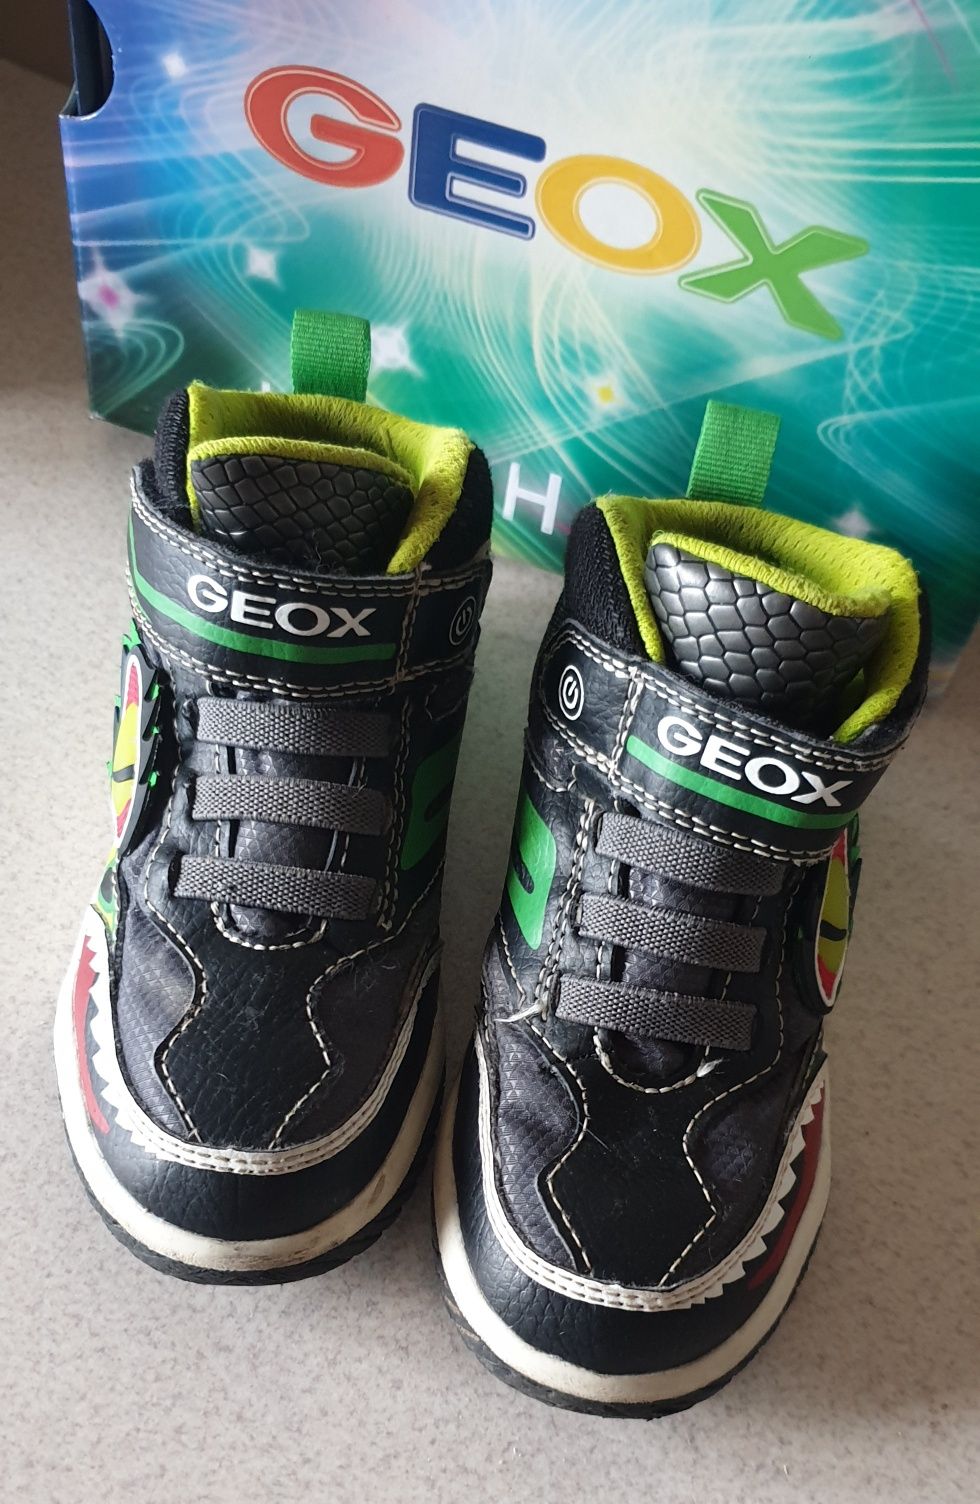 Geox lights buty dziecięce rozmiar 27 smok dinozaur świecące